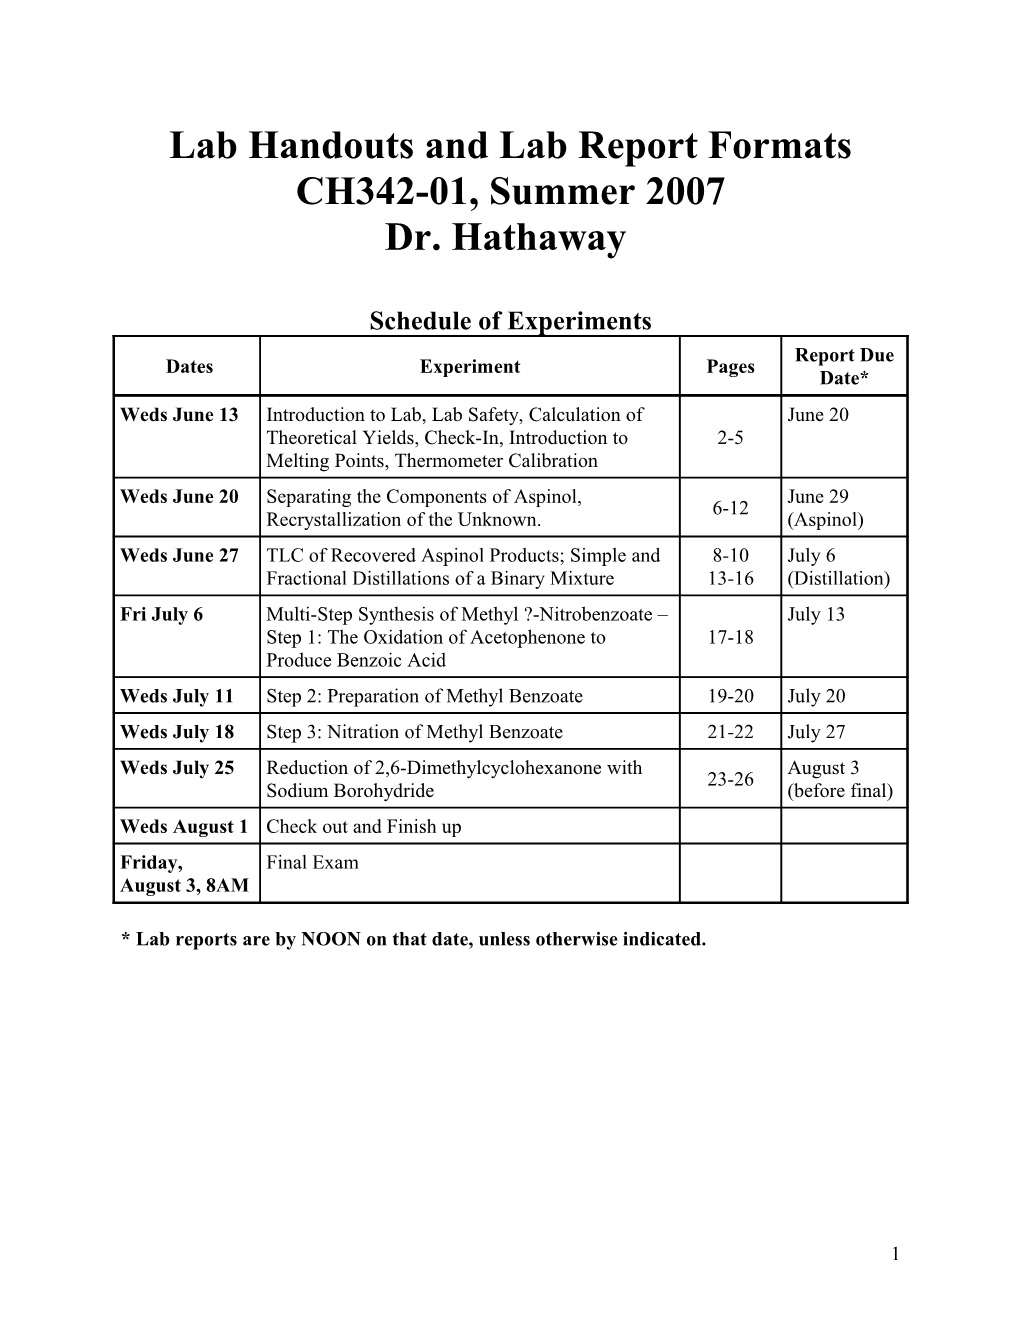 CH342 Summer 2007 Lab Handout